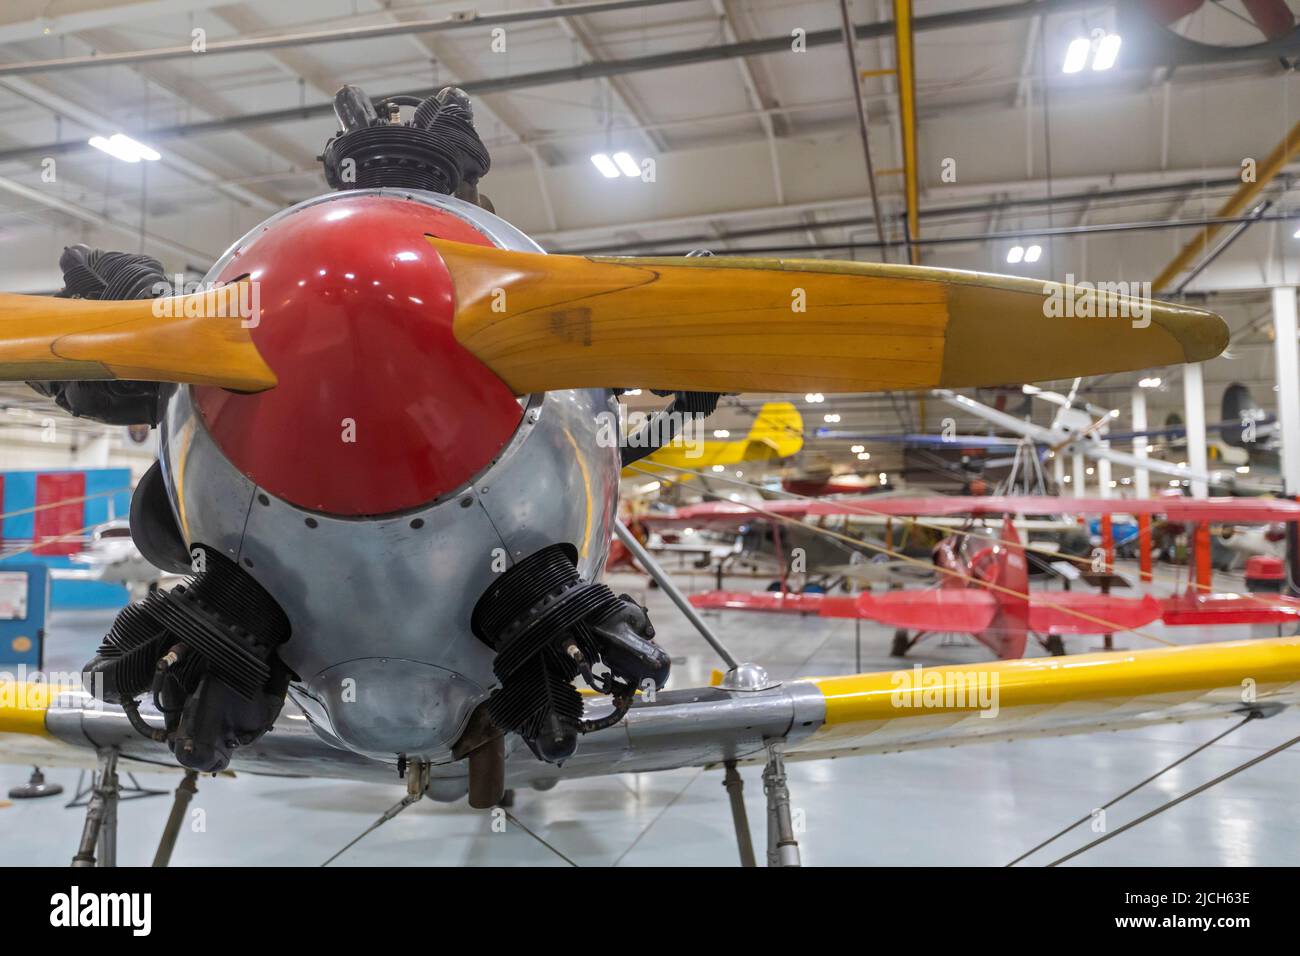 Liberal, Kansas - le Mid-America Air Museum. Le musée expose plus de 100 avions. La recrue Ryan PT-22 était un avion d'entraînement pendant la première Guerre mondiale Banque D'Images